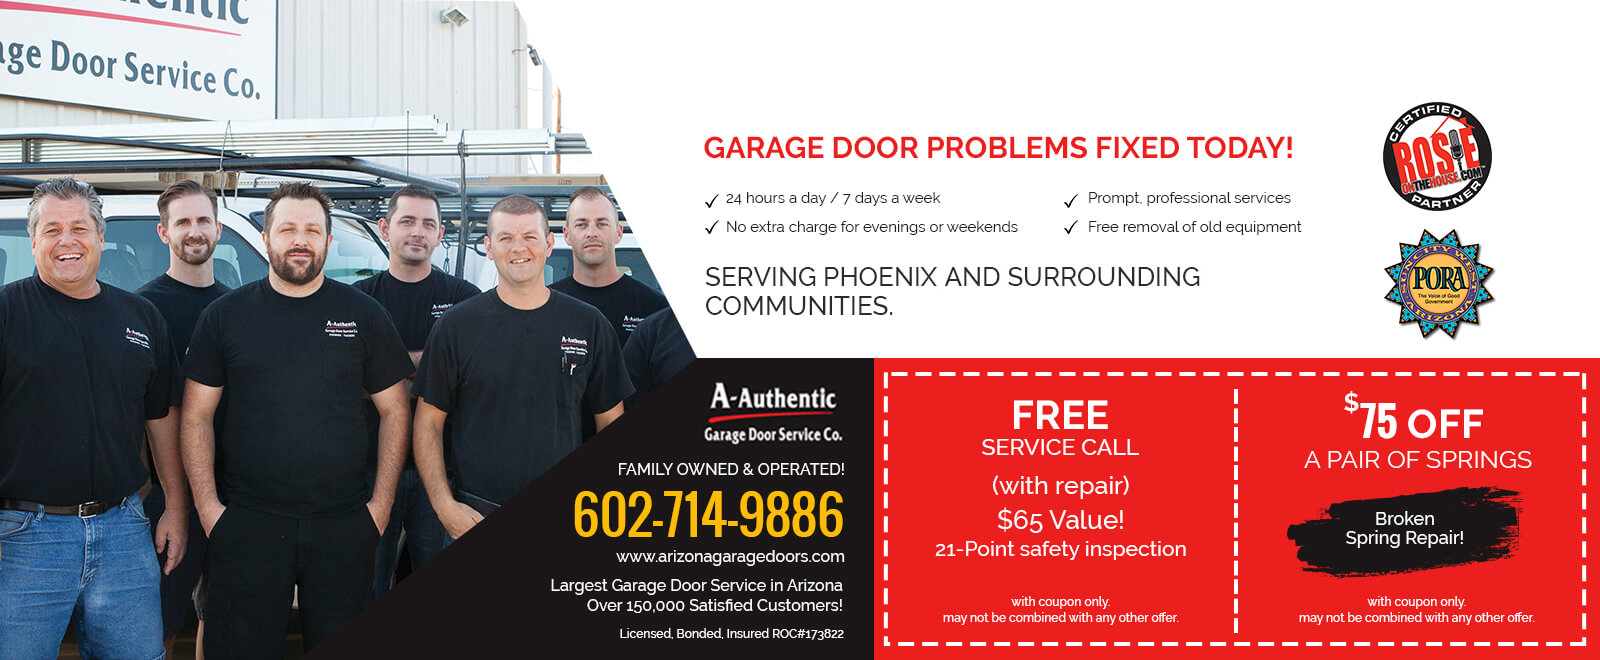 A-Authentic Garage Doors